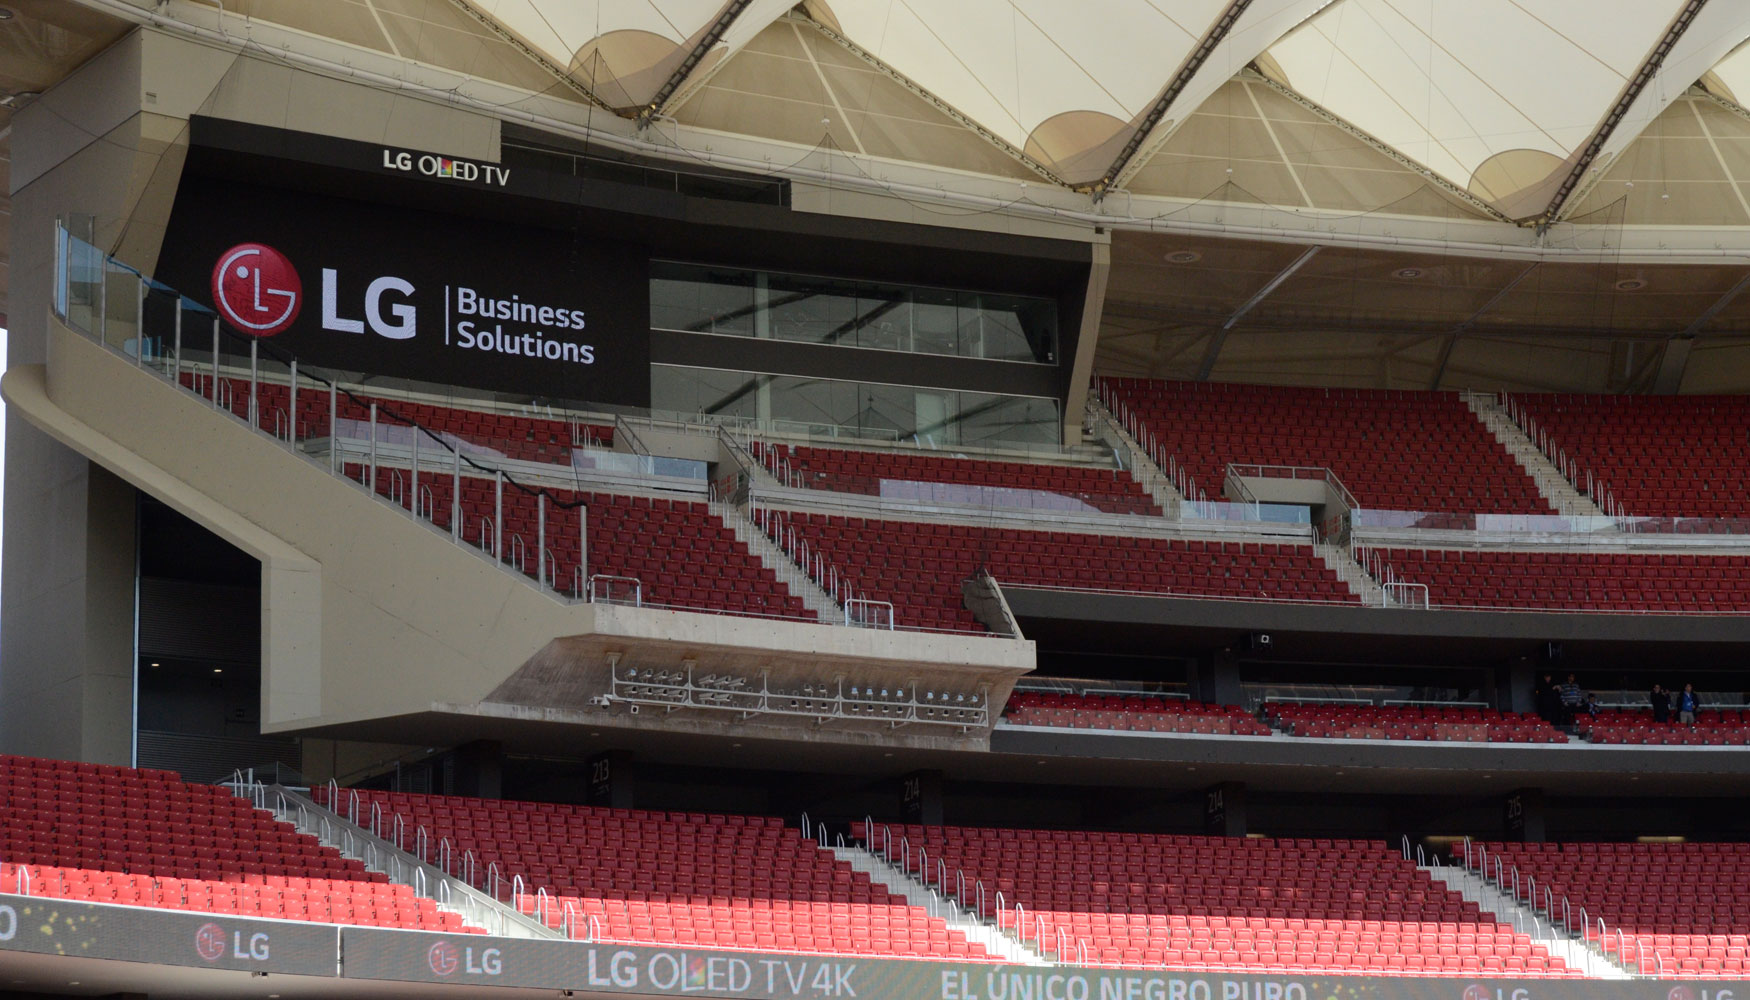 LG ha instalado cerca de 815 m2 de pantallas LED en el Estadio Wanda Metropolitano, sumando el ribbon de ms de 500 m que recorre todo el gradero...